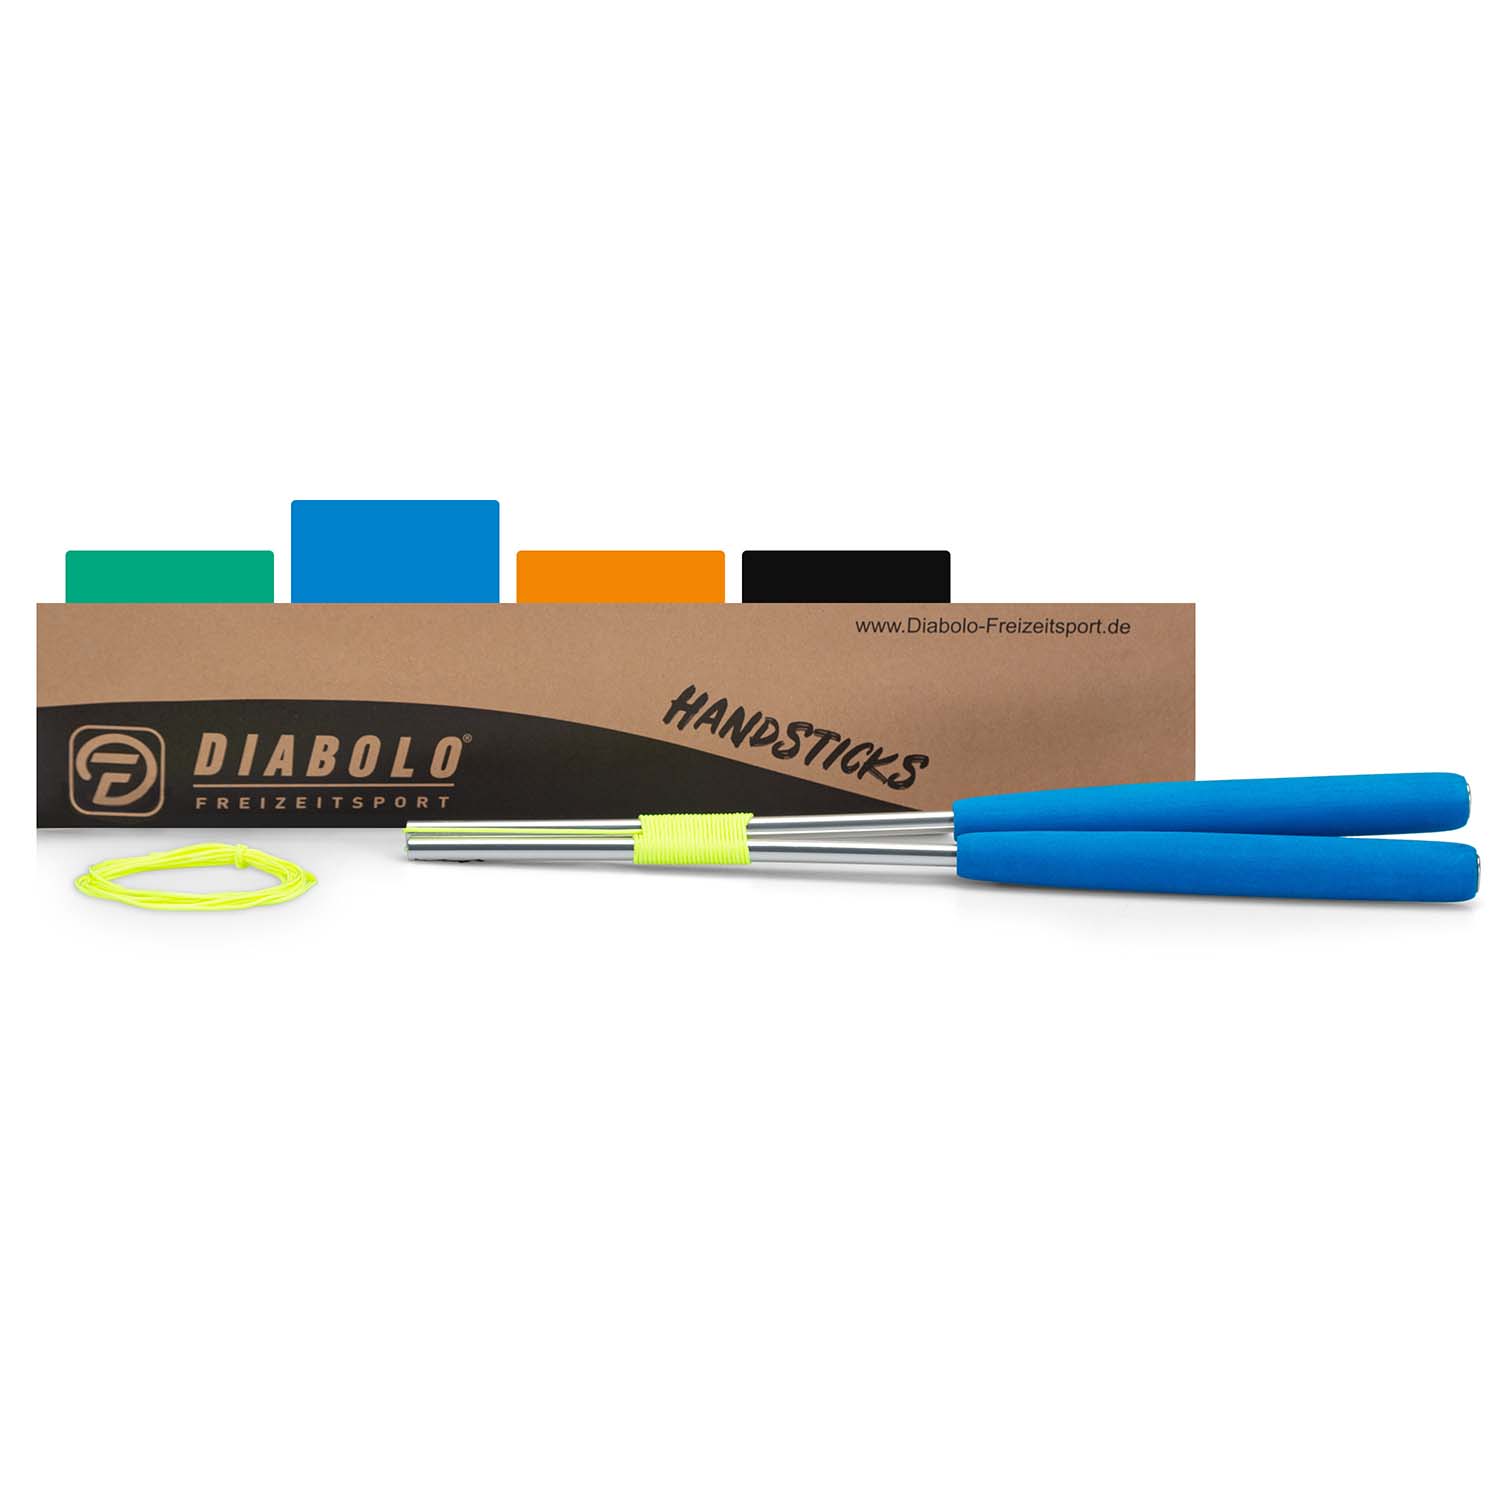 Diabolo Freizeitsport Diabolo Handsticks in blau kaufen!